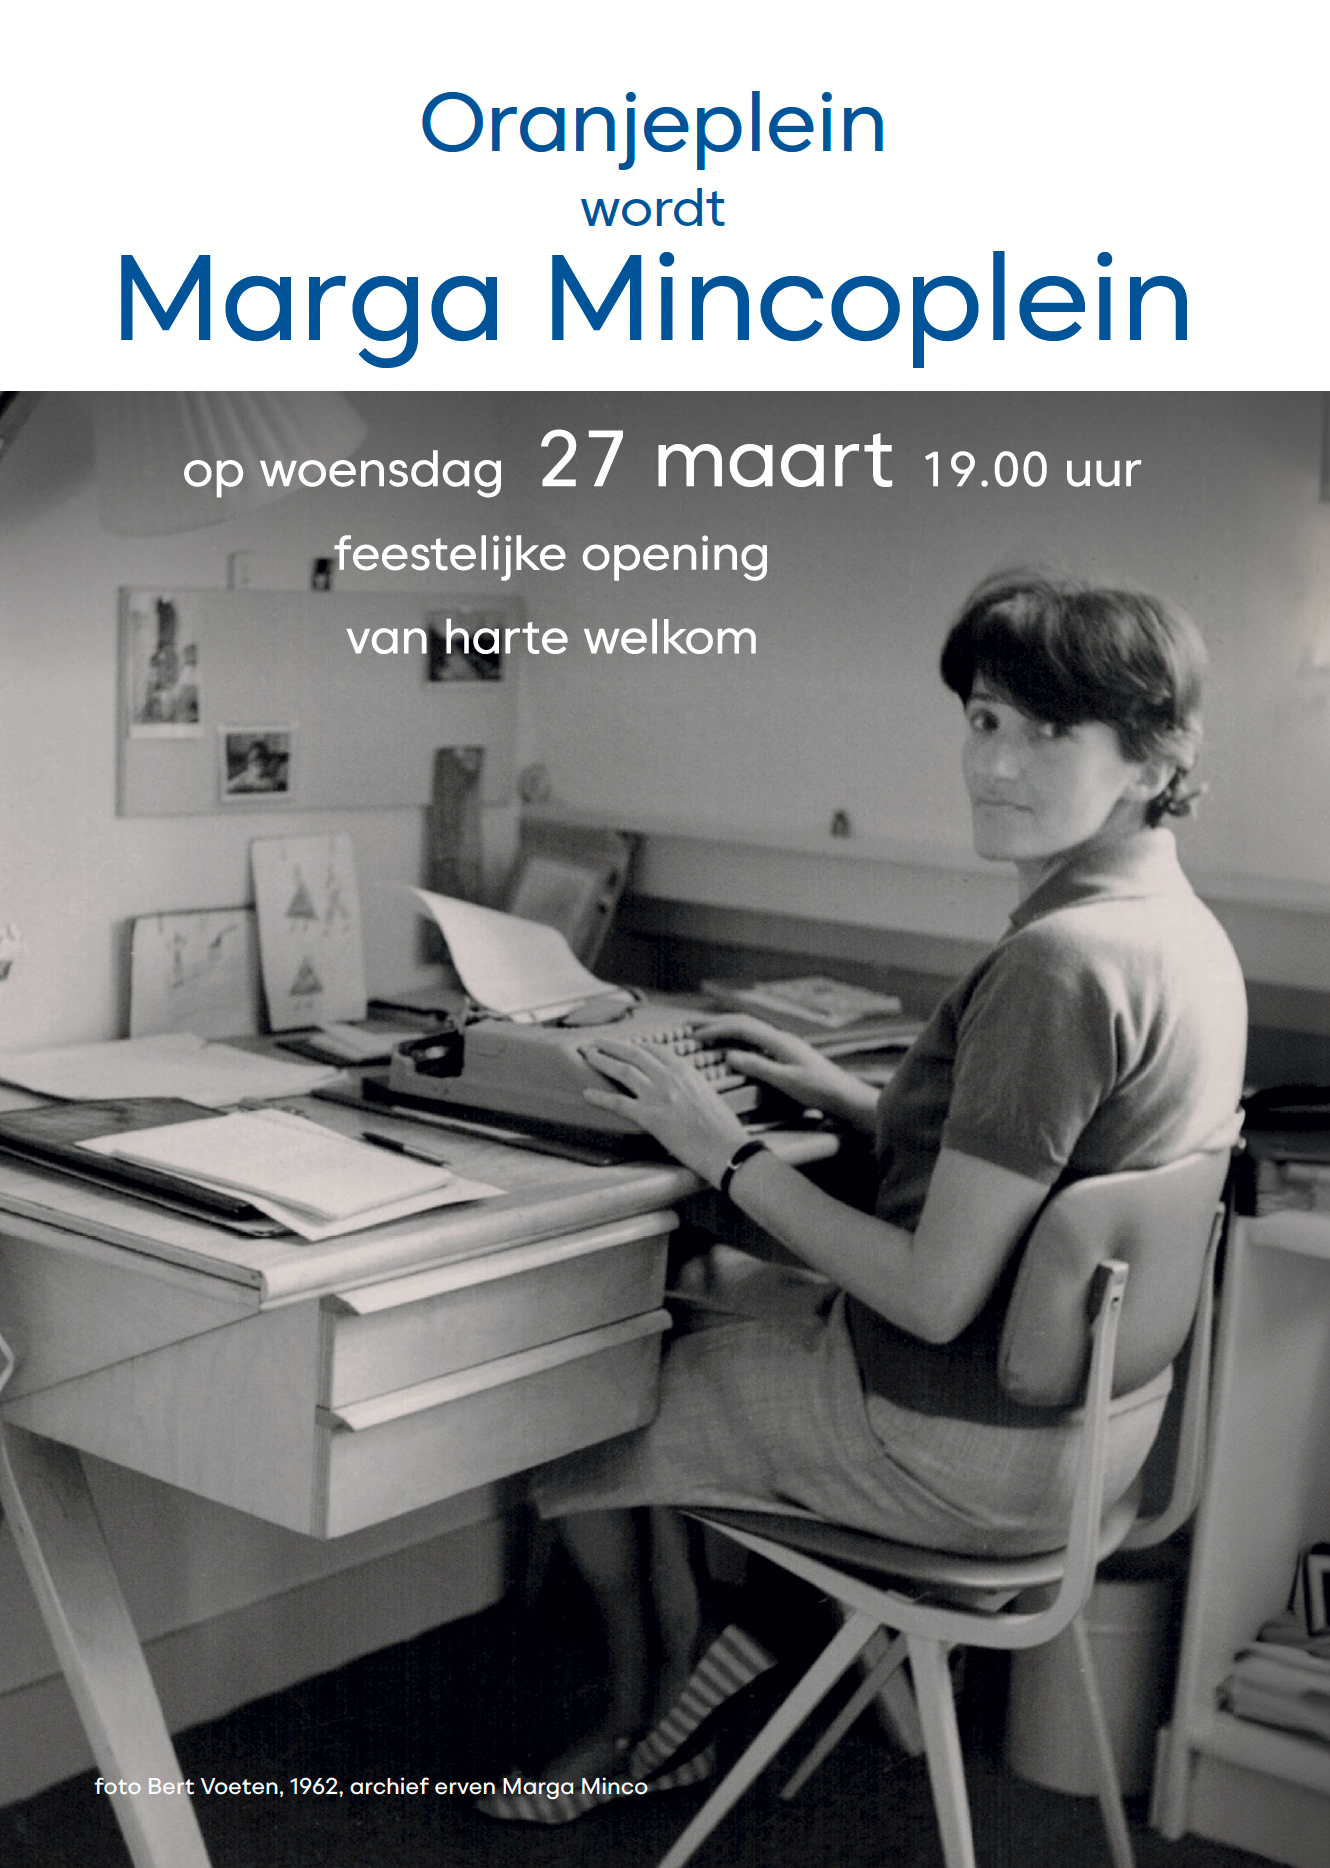 Featured image for “Uitnodiging: Oranjeplein wordt Marga Mincoplein”